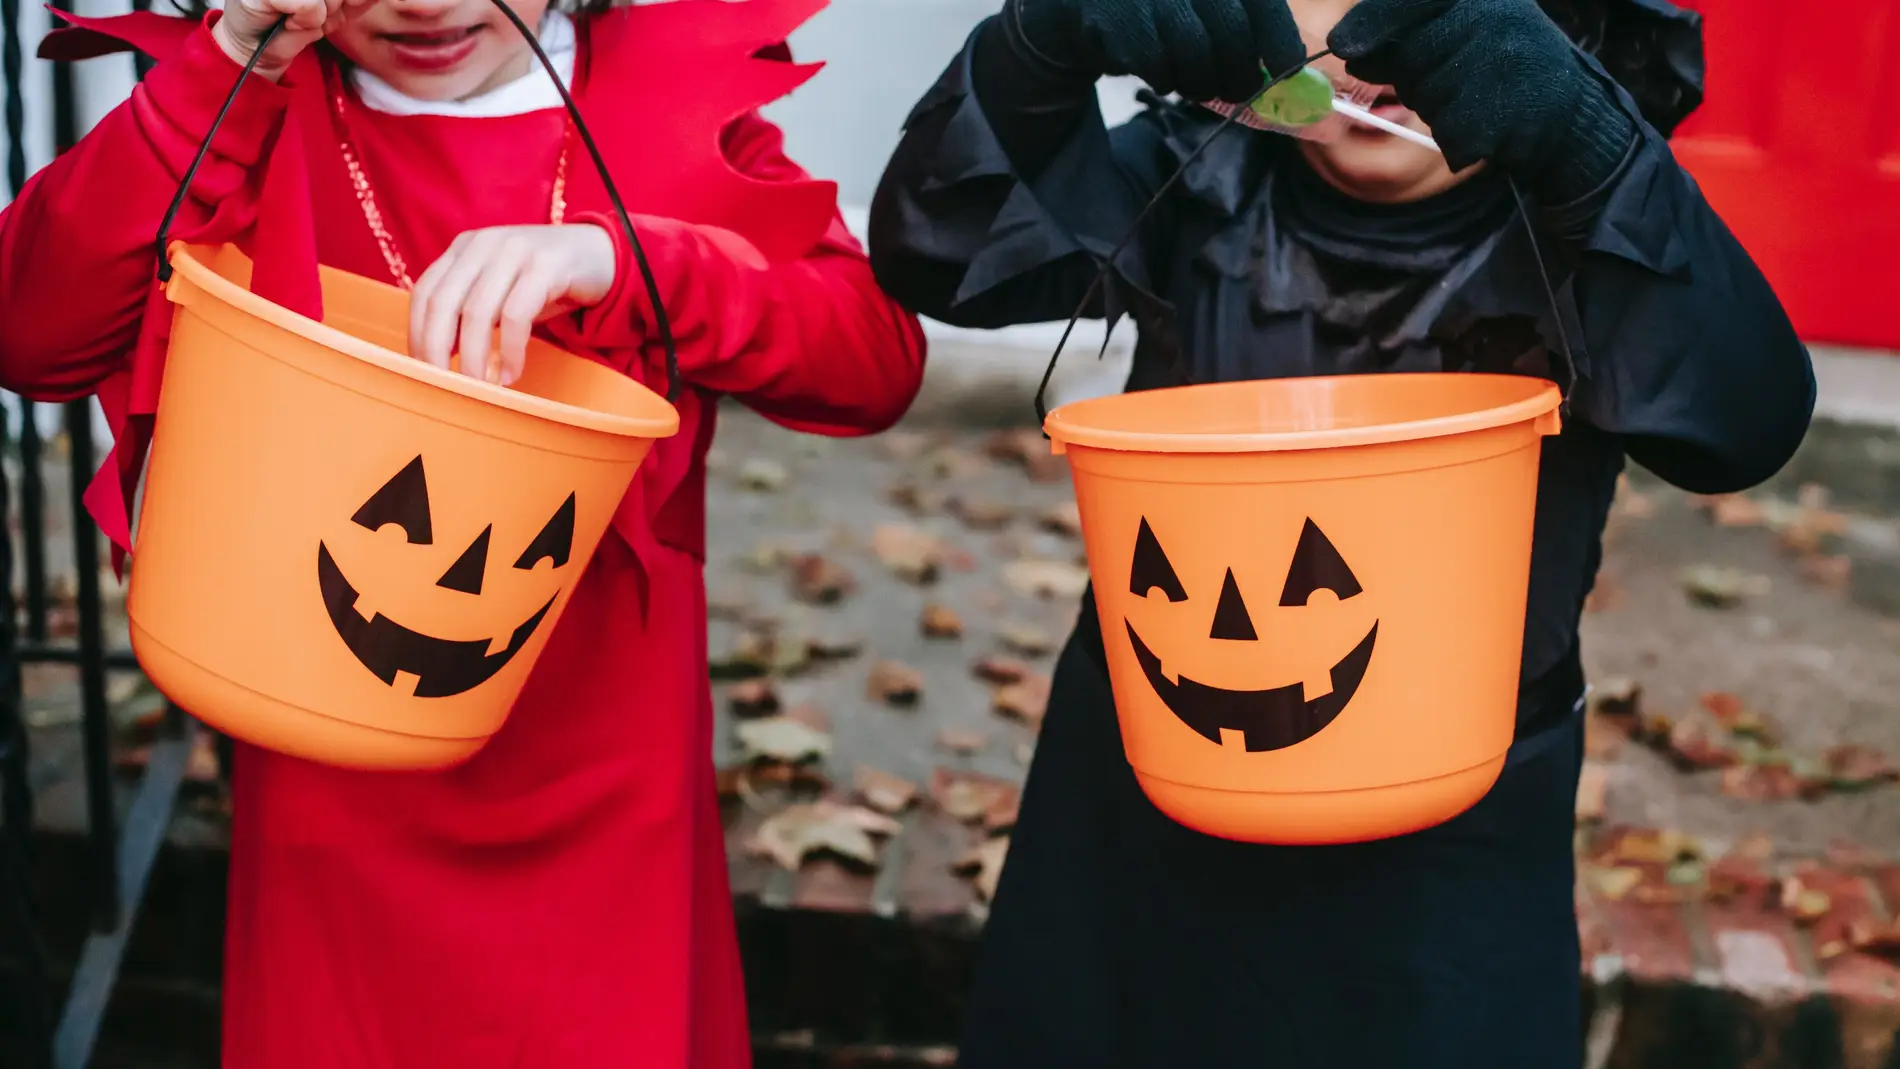 Disfraces, máscaras y caretas, en el foco de la inspección de consumo por halloween